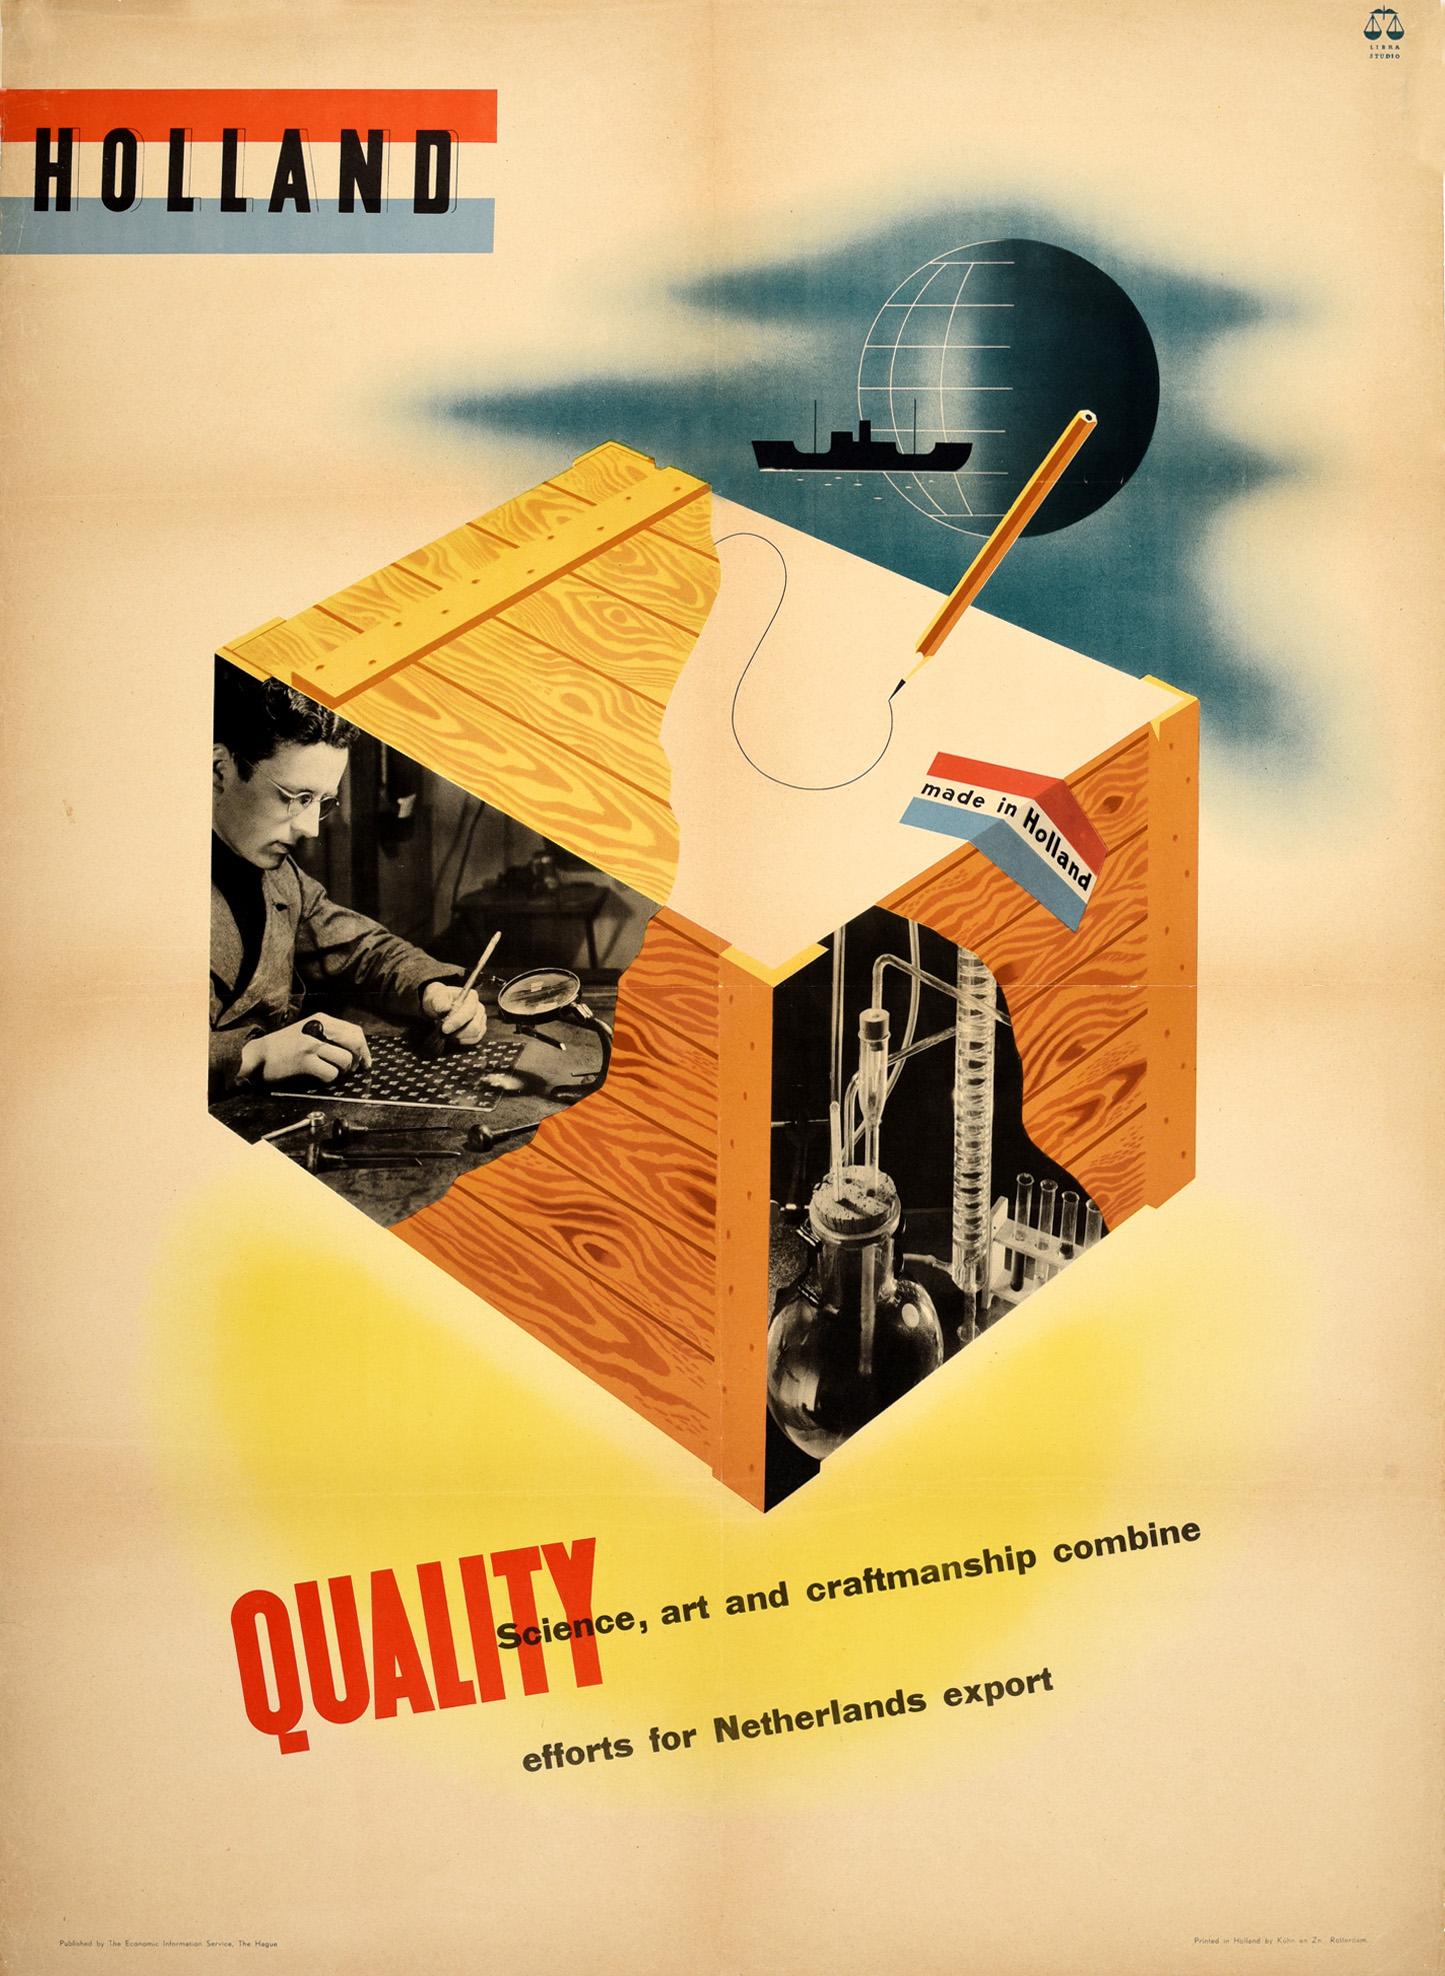 Unknown Print - Original Vintage Poster Holland Science Art And Craftsmanship Netherlands Export